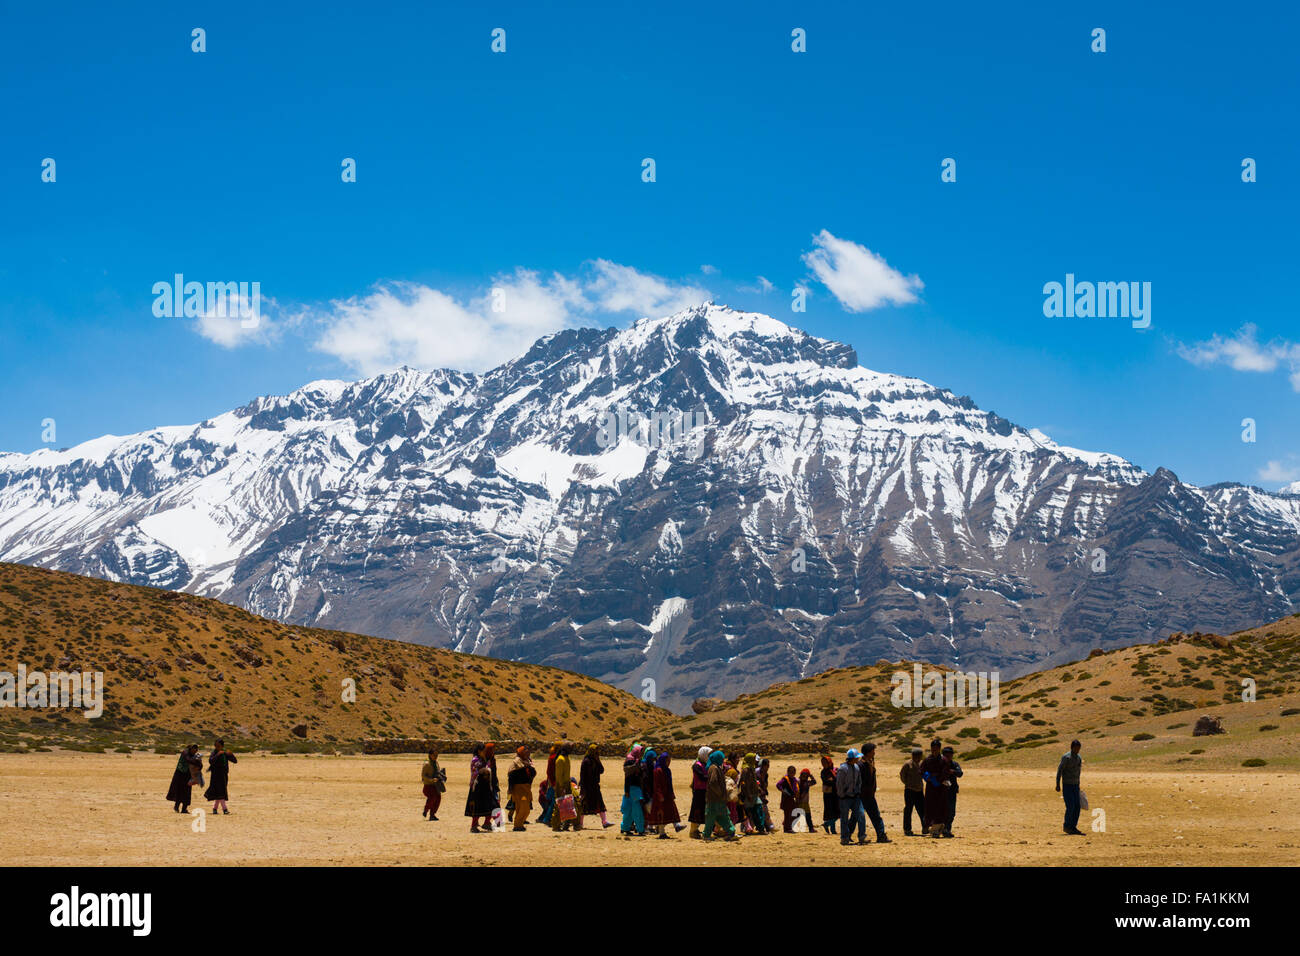 Un gruppo di molti pellegrini buddista camminando sul pellegrinaggio attorno ad un lago santo tra le montagne himalayane in Spiti Valley Foto Stock